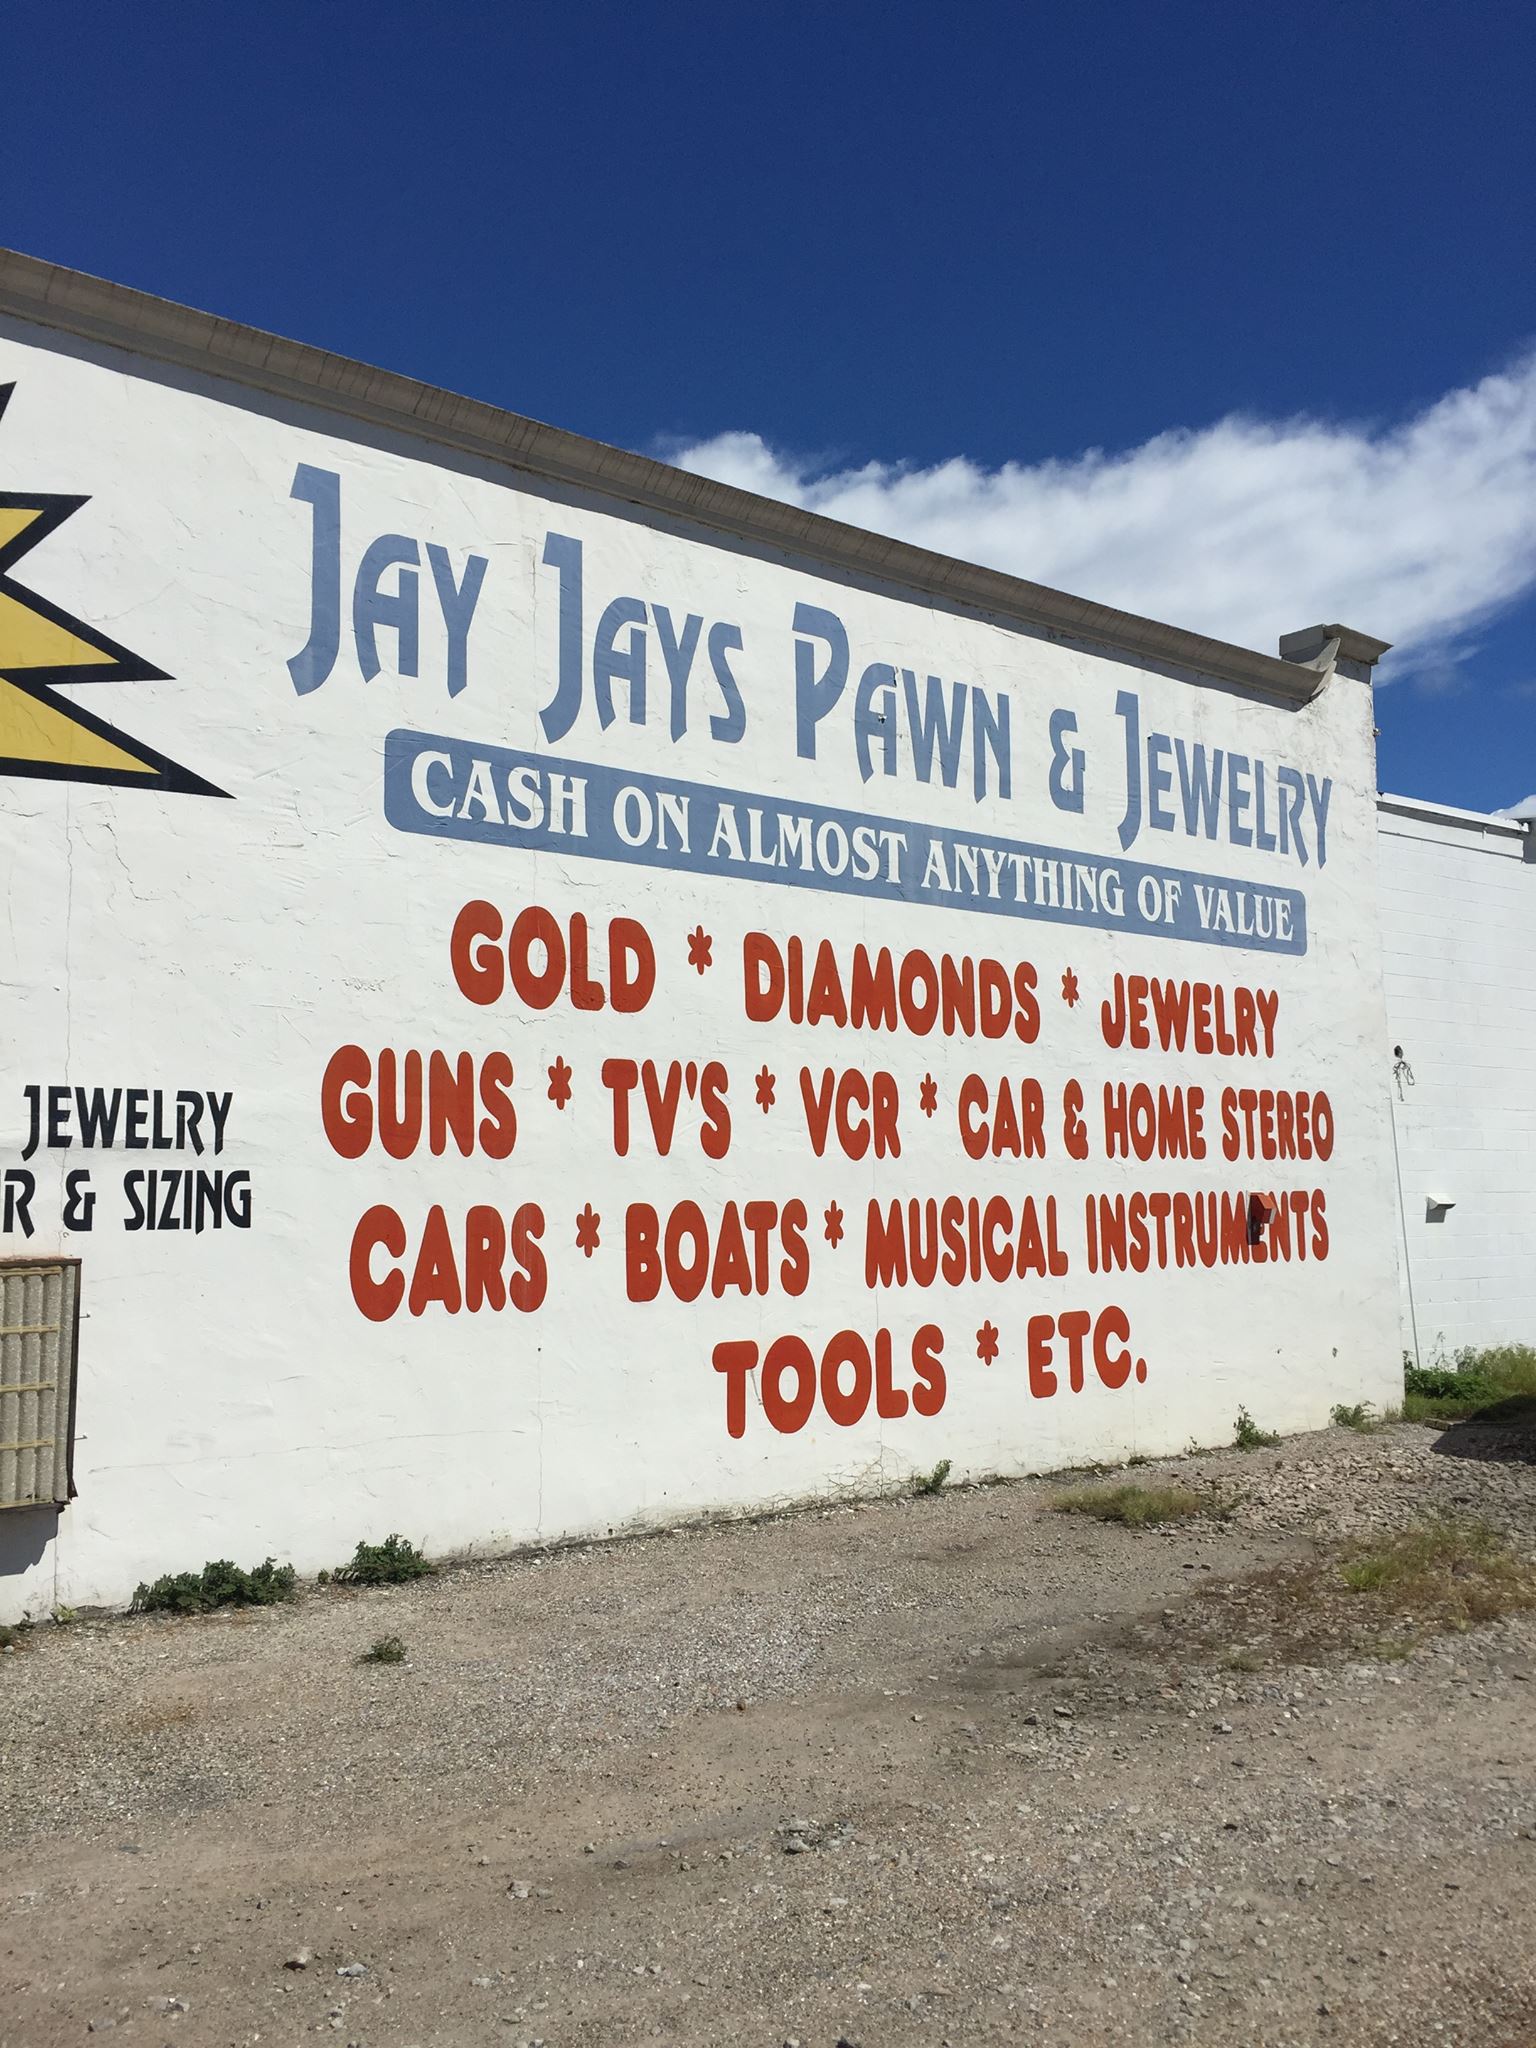 Jay Jays Pawn & Jewelry